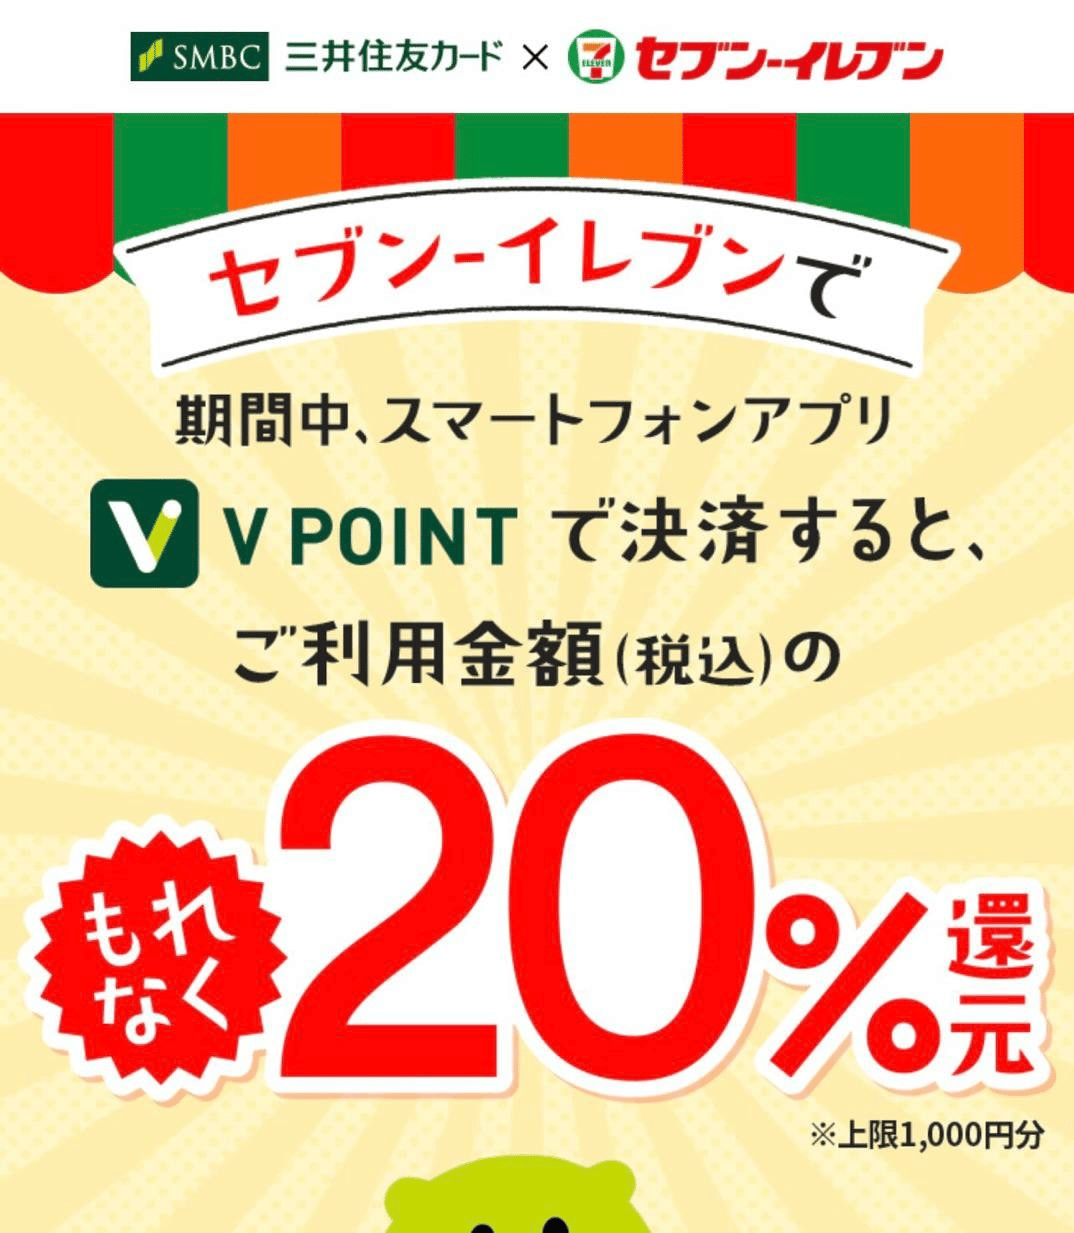 使用Vpoint APP到7-11消費可獲20%回贈!